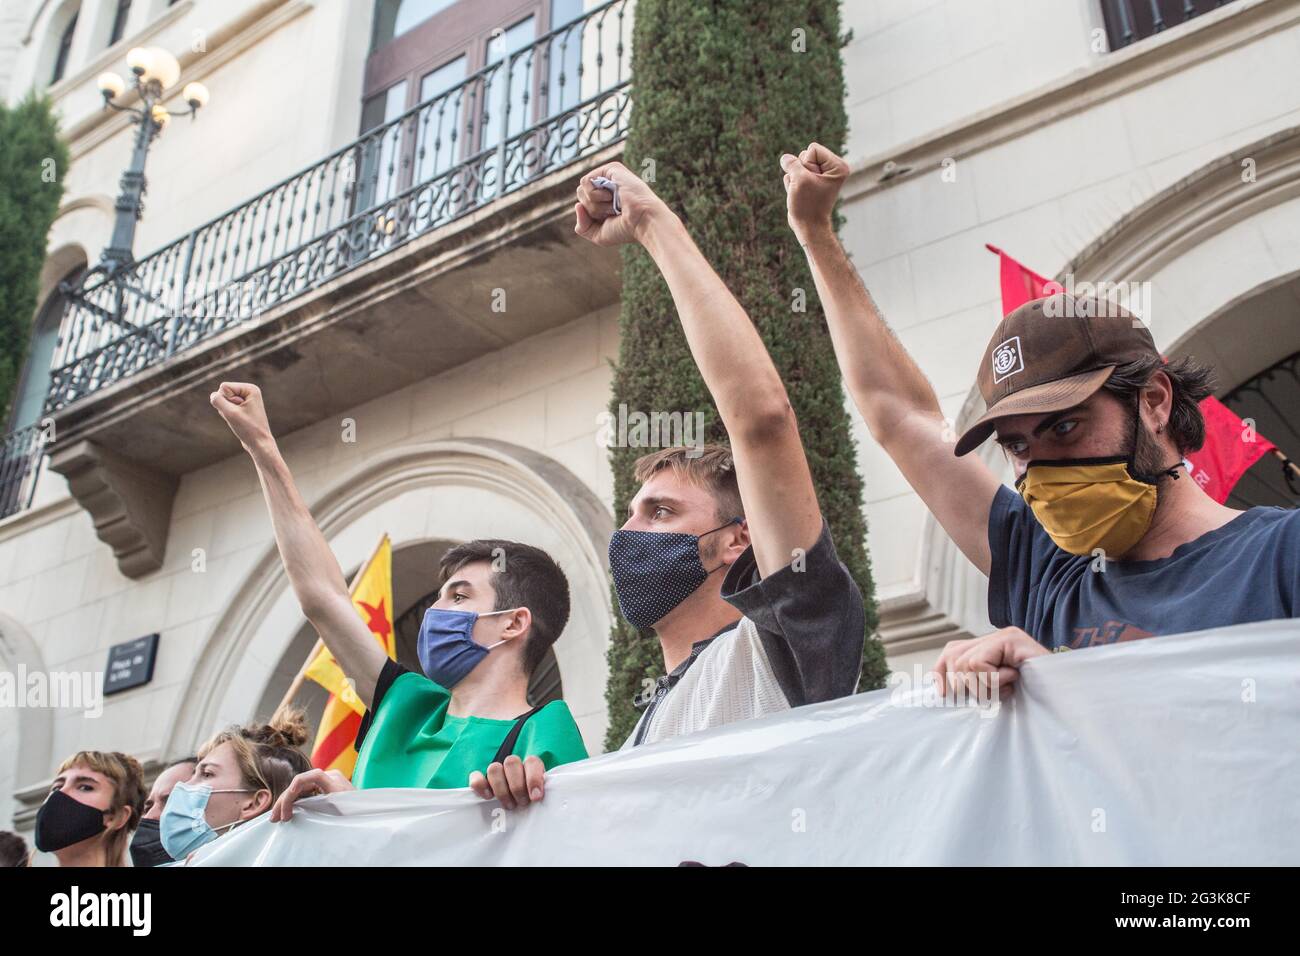 Marcel Vivet (C), con los manifestantes, sostiene una bandera mientras hace gestos durante la manifestación.Cientos de personas se han manifestado en Badalona, una ciudad al lado de Barcelona en solidaridad con Marcel Vivet, Quién ha sido condenado a cinco años de prisión por los incidentes ocurridos en una manifestación de independencia catalana en septiembre de 2018 en Barcelona contra un acto del sindicato de policía, Jusapol (Justicia del Salario Policial). Vivet ha sido juzgado por un delito de desorden público y ataque contra un agente de la autoridad. A la manifestación asistió Dolors Sabater, diputado del Parlamento de Cat Foto de stock